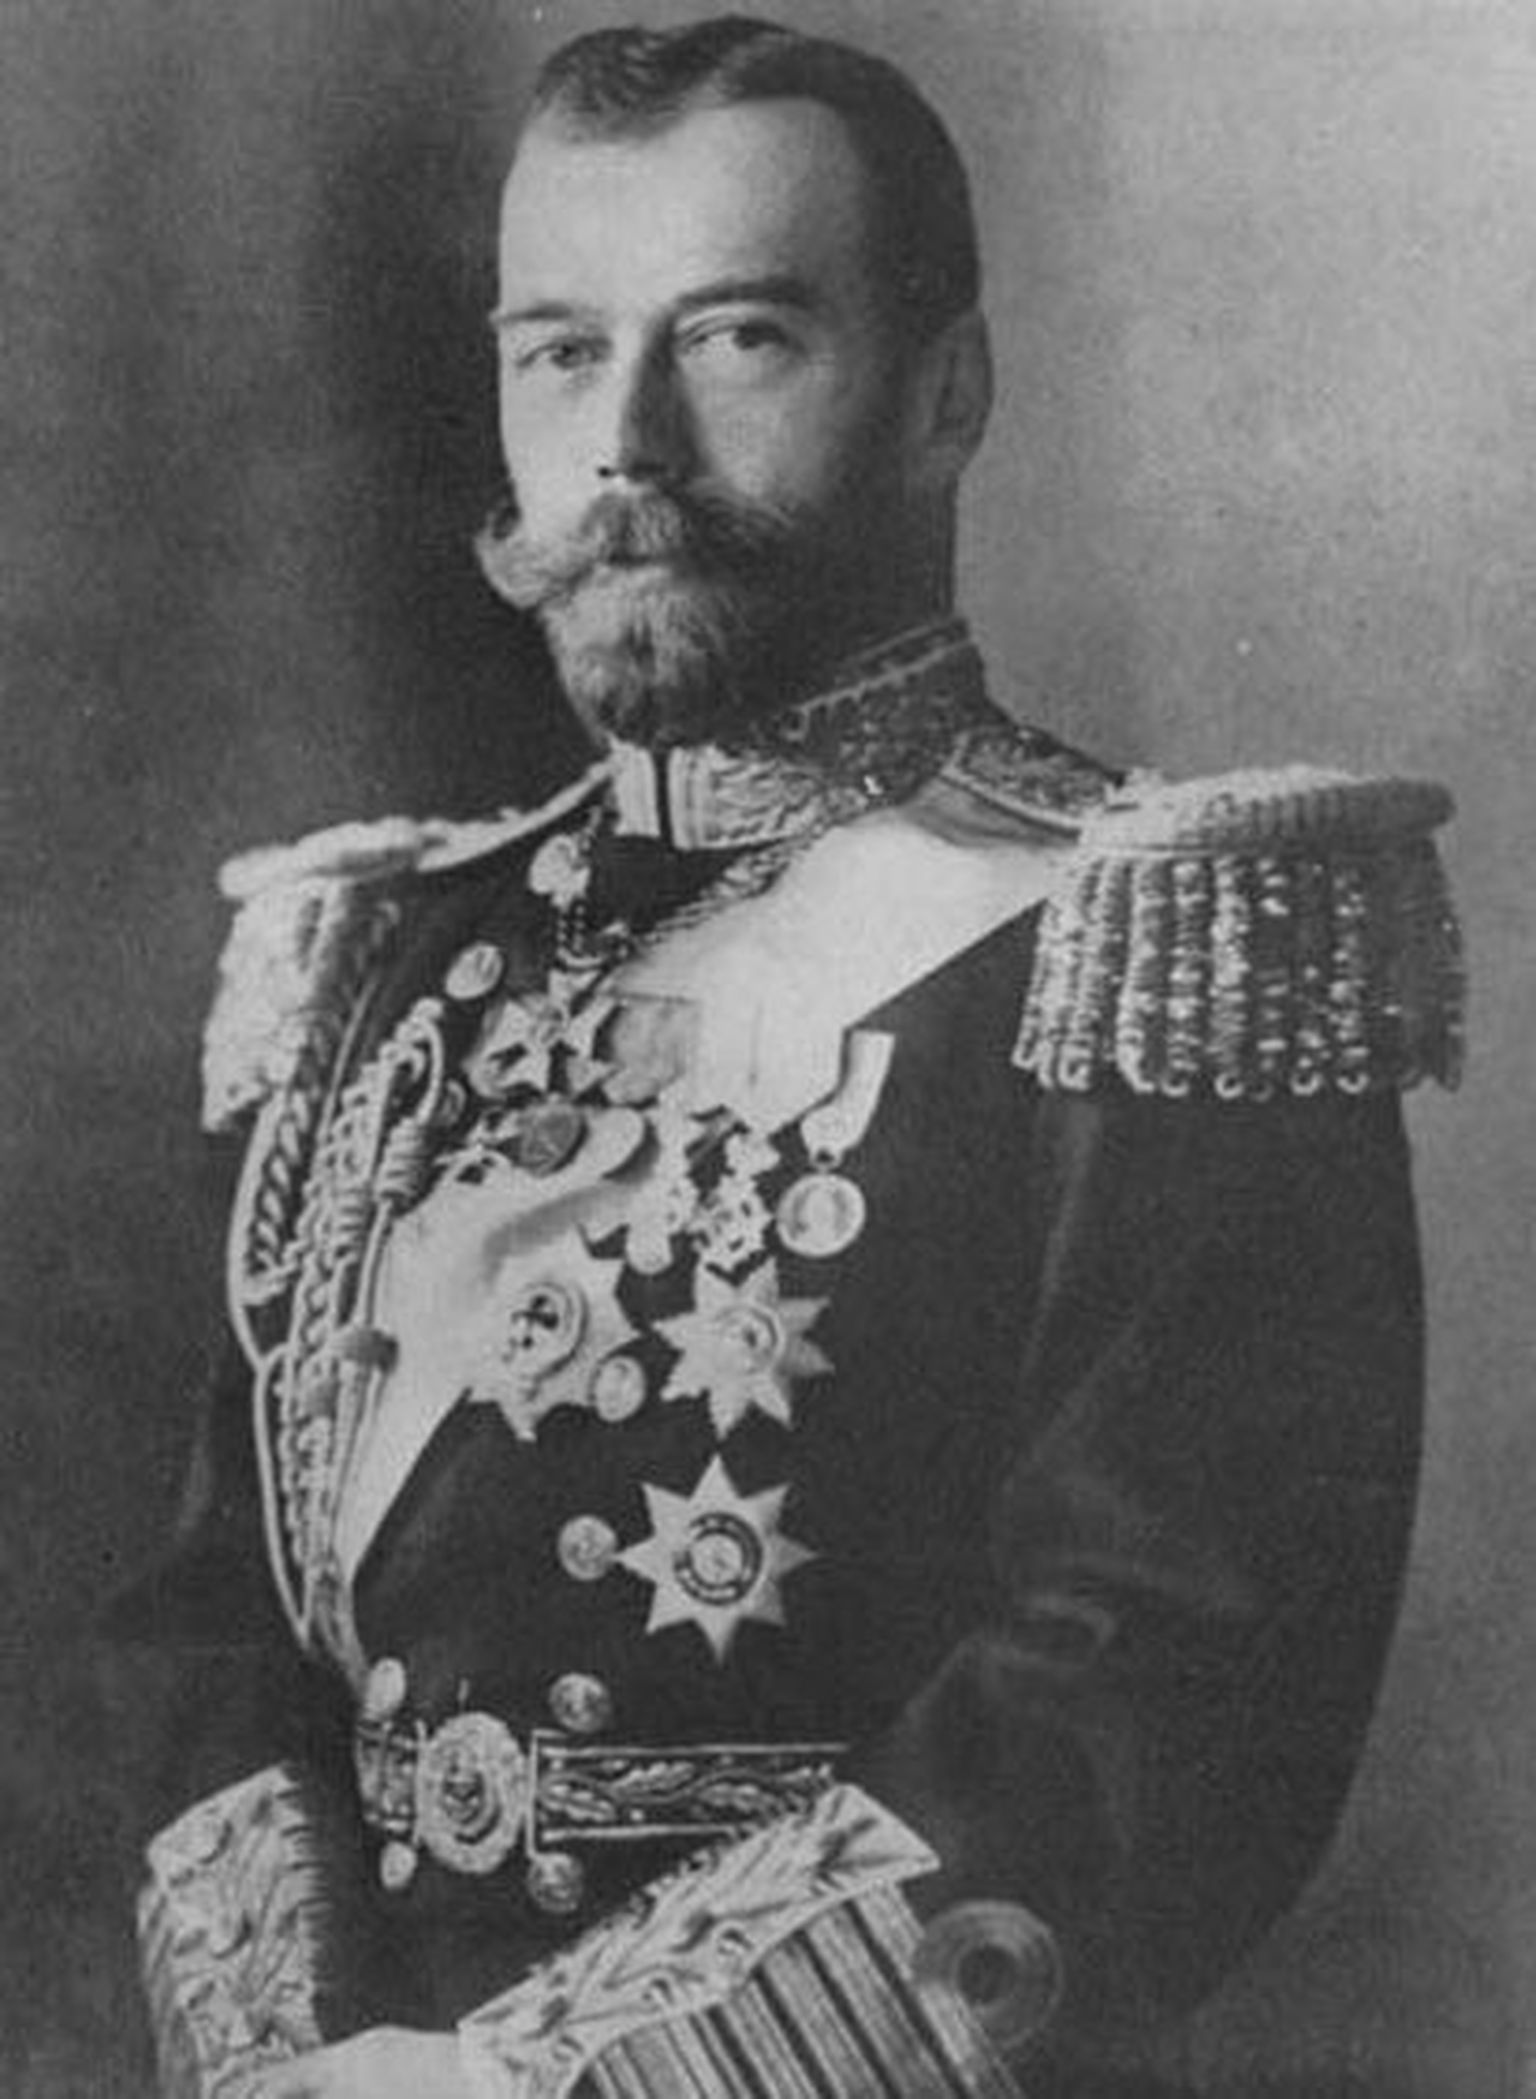 Venemaa viimane keiser, Poola kuningas ja Soome suurvürst Nikolai II